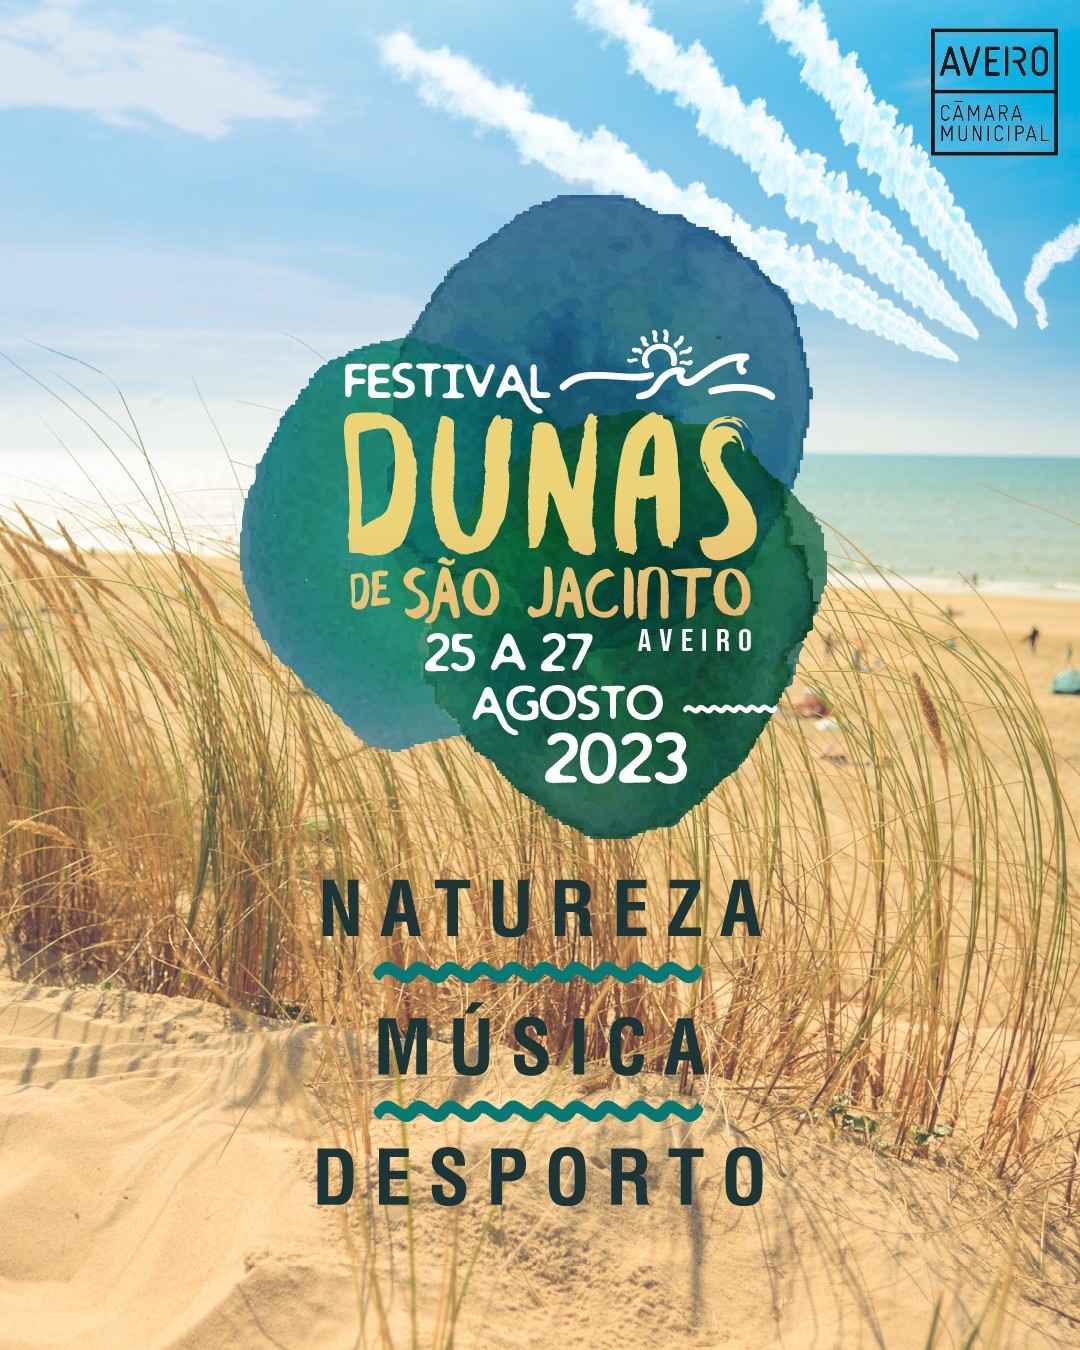 The Black Mamba, IRMA e Mimicat são os primeiros nomes do Festival Dunas de São Jacinto 2023